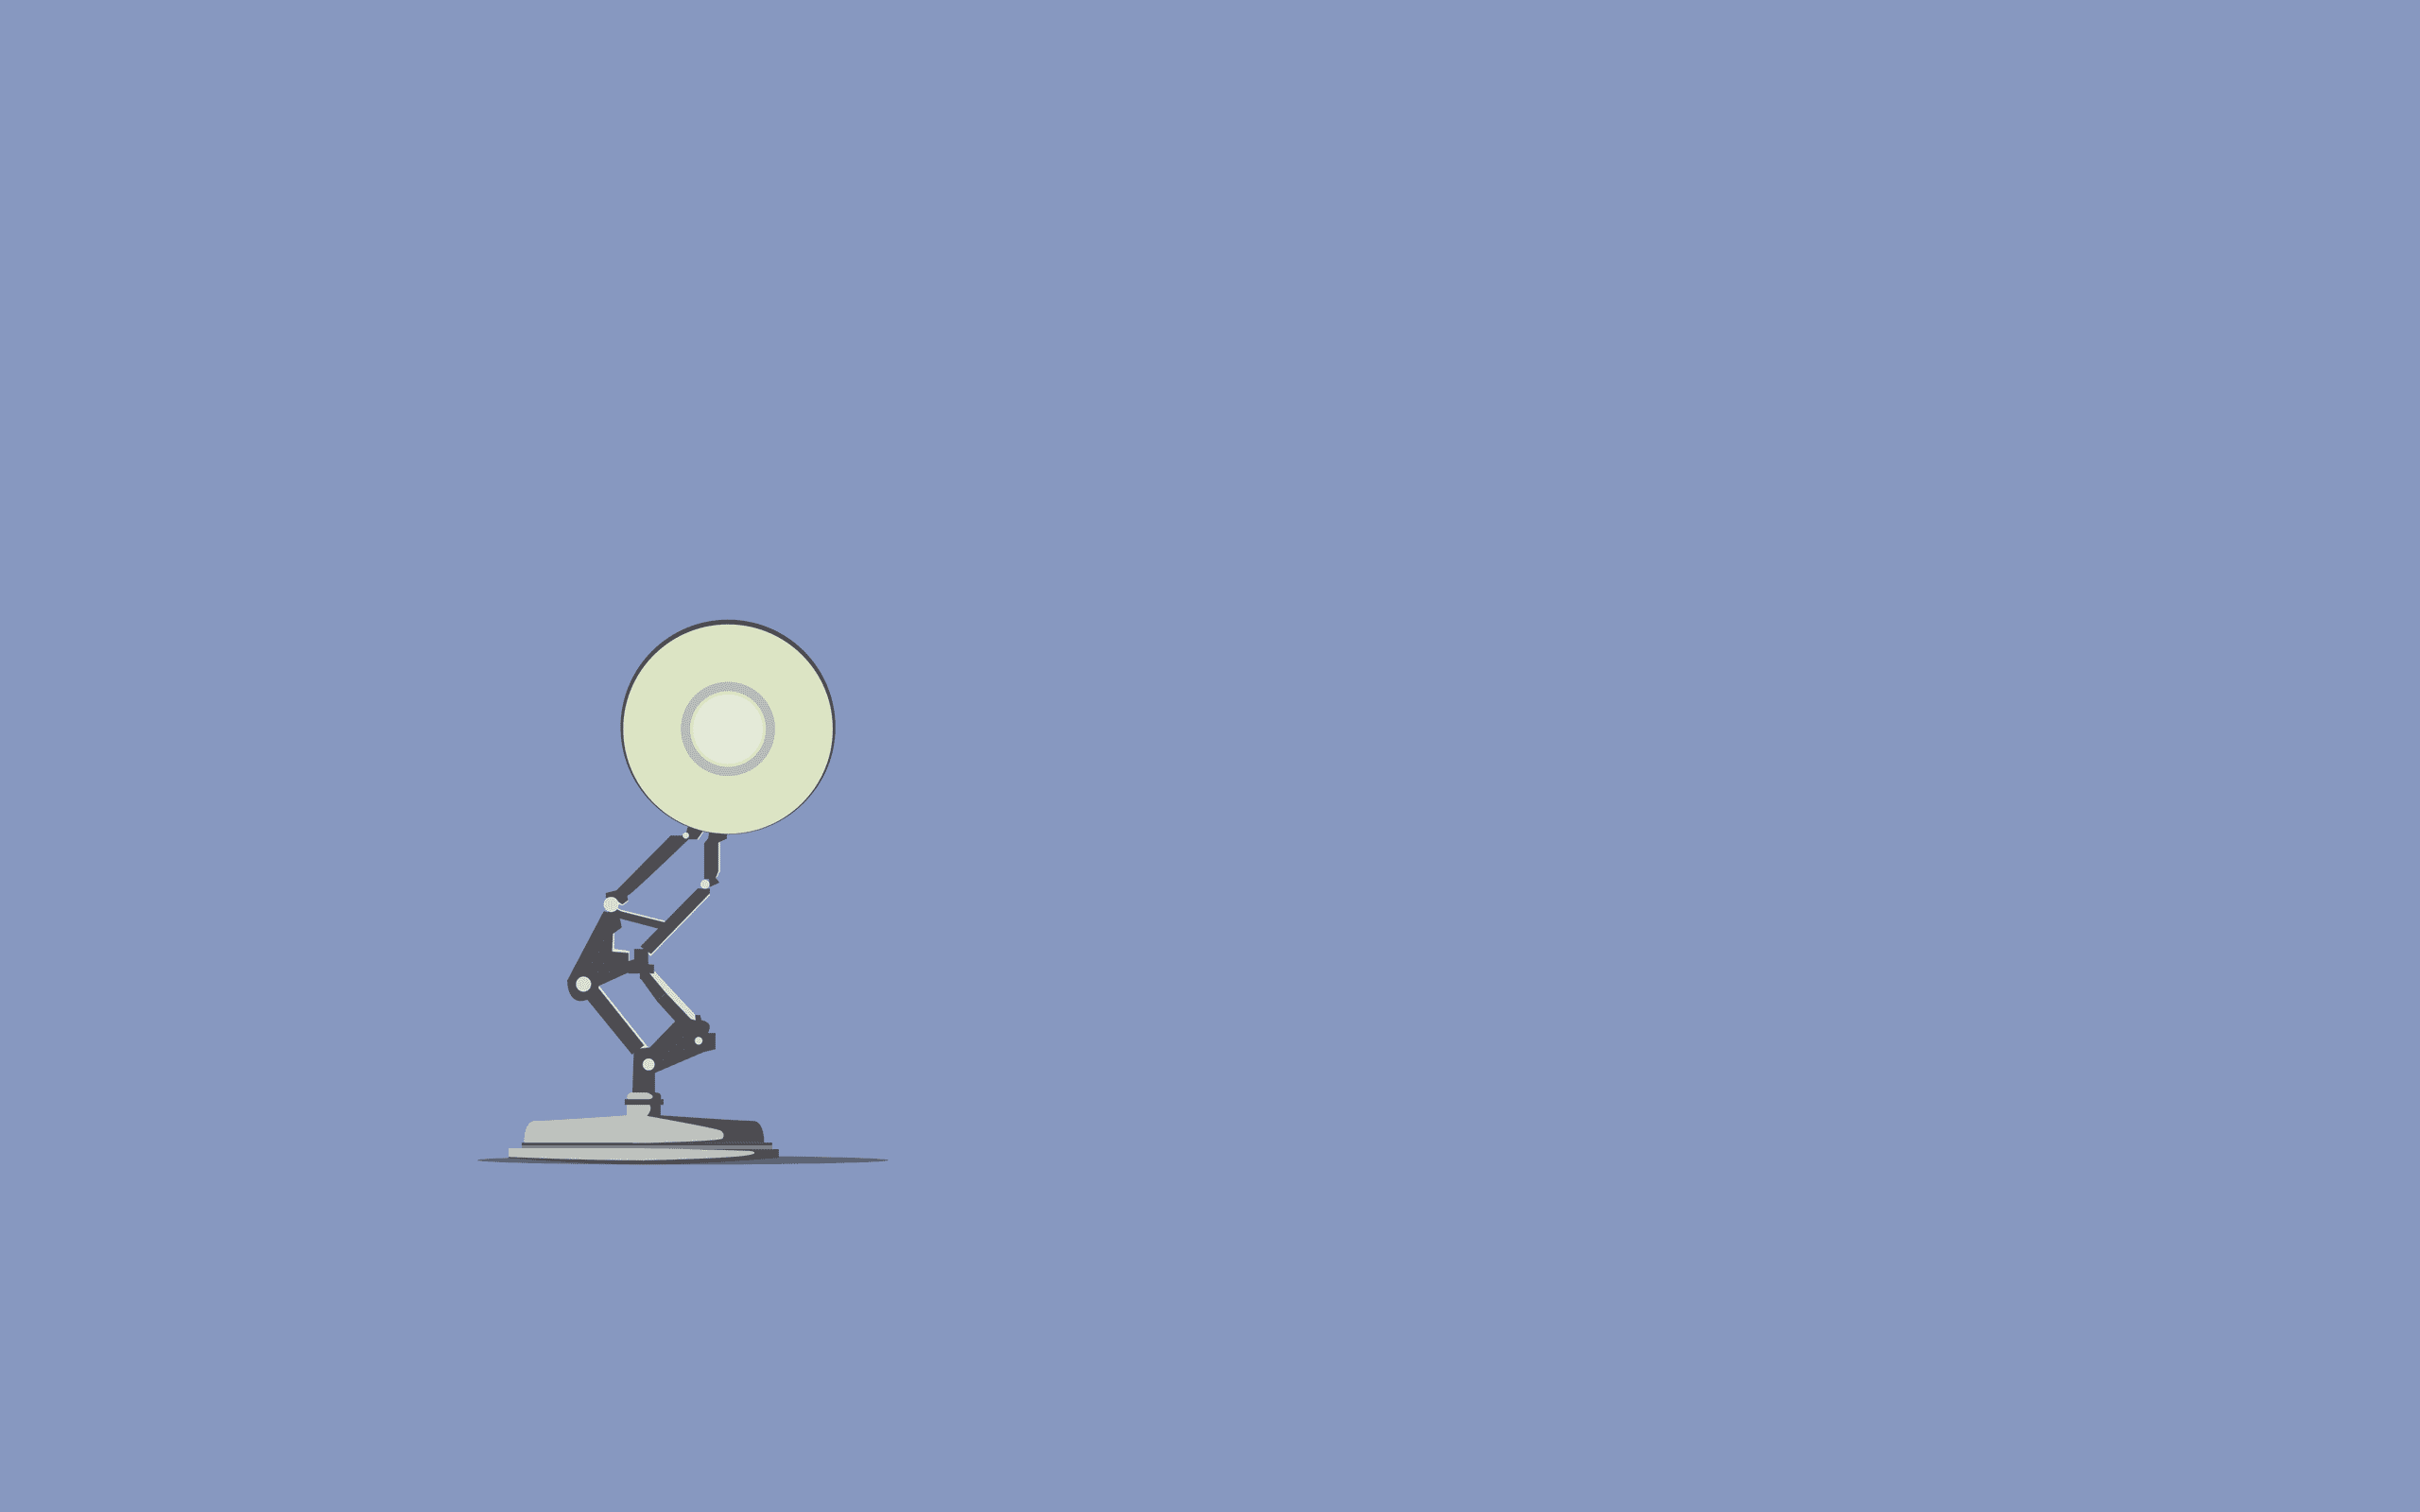 Pixar Lamp